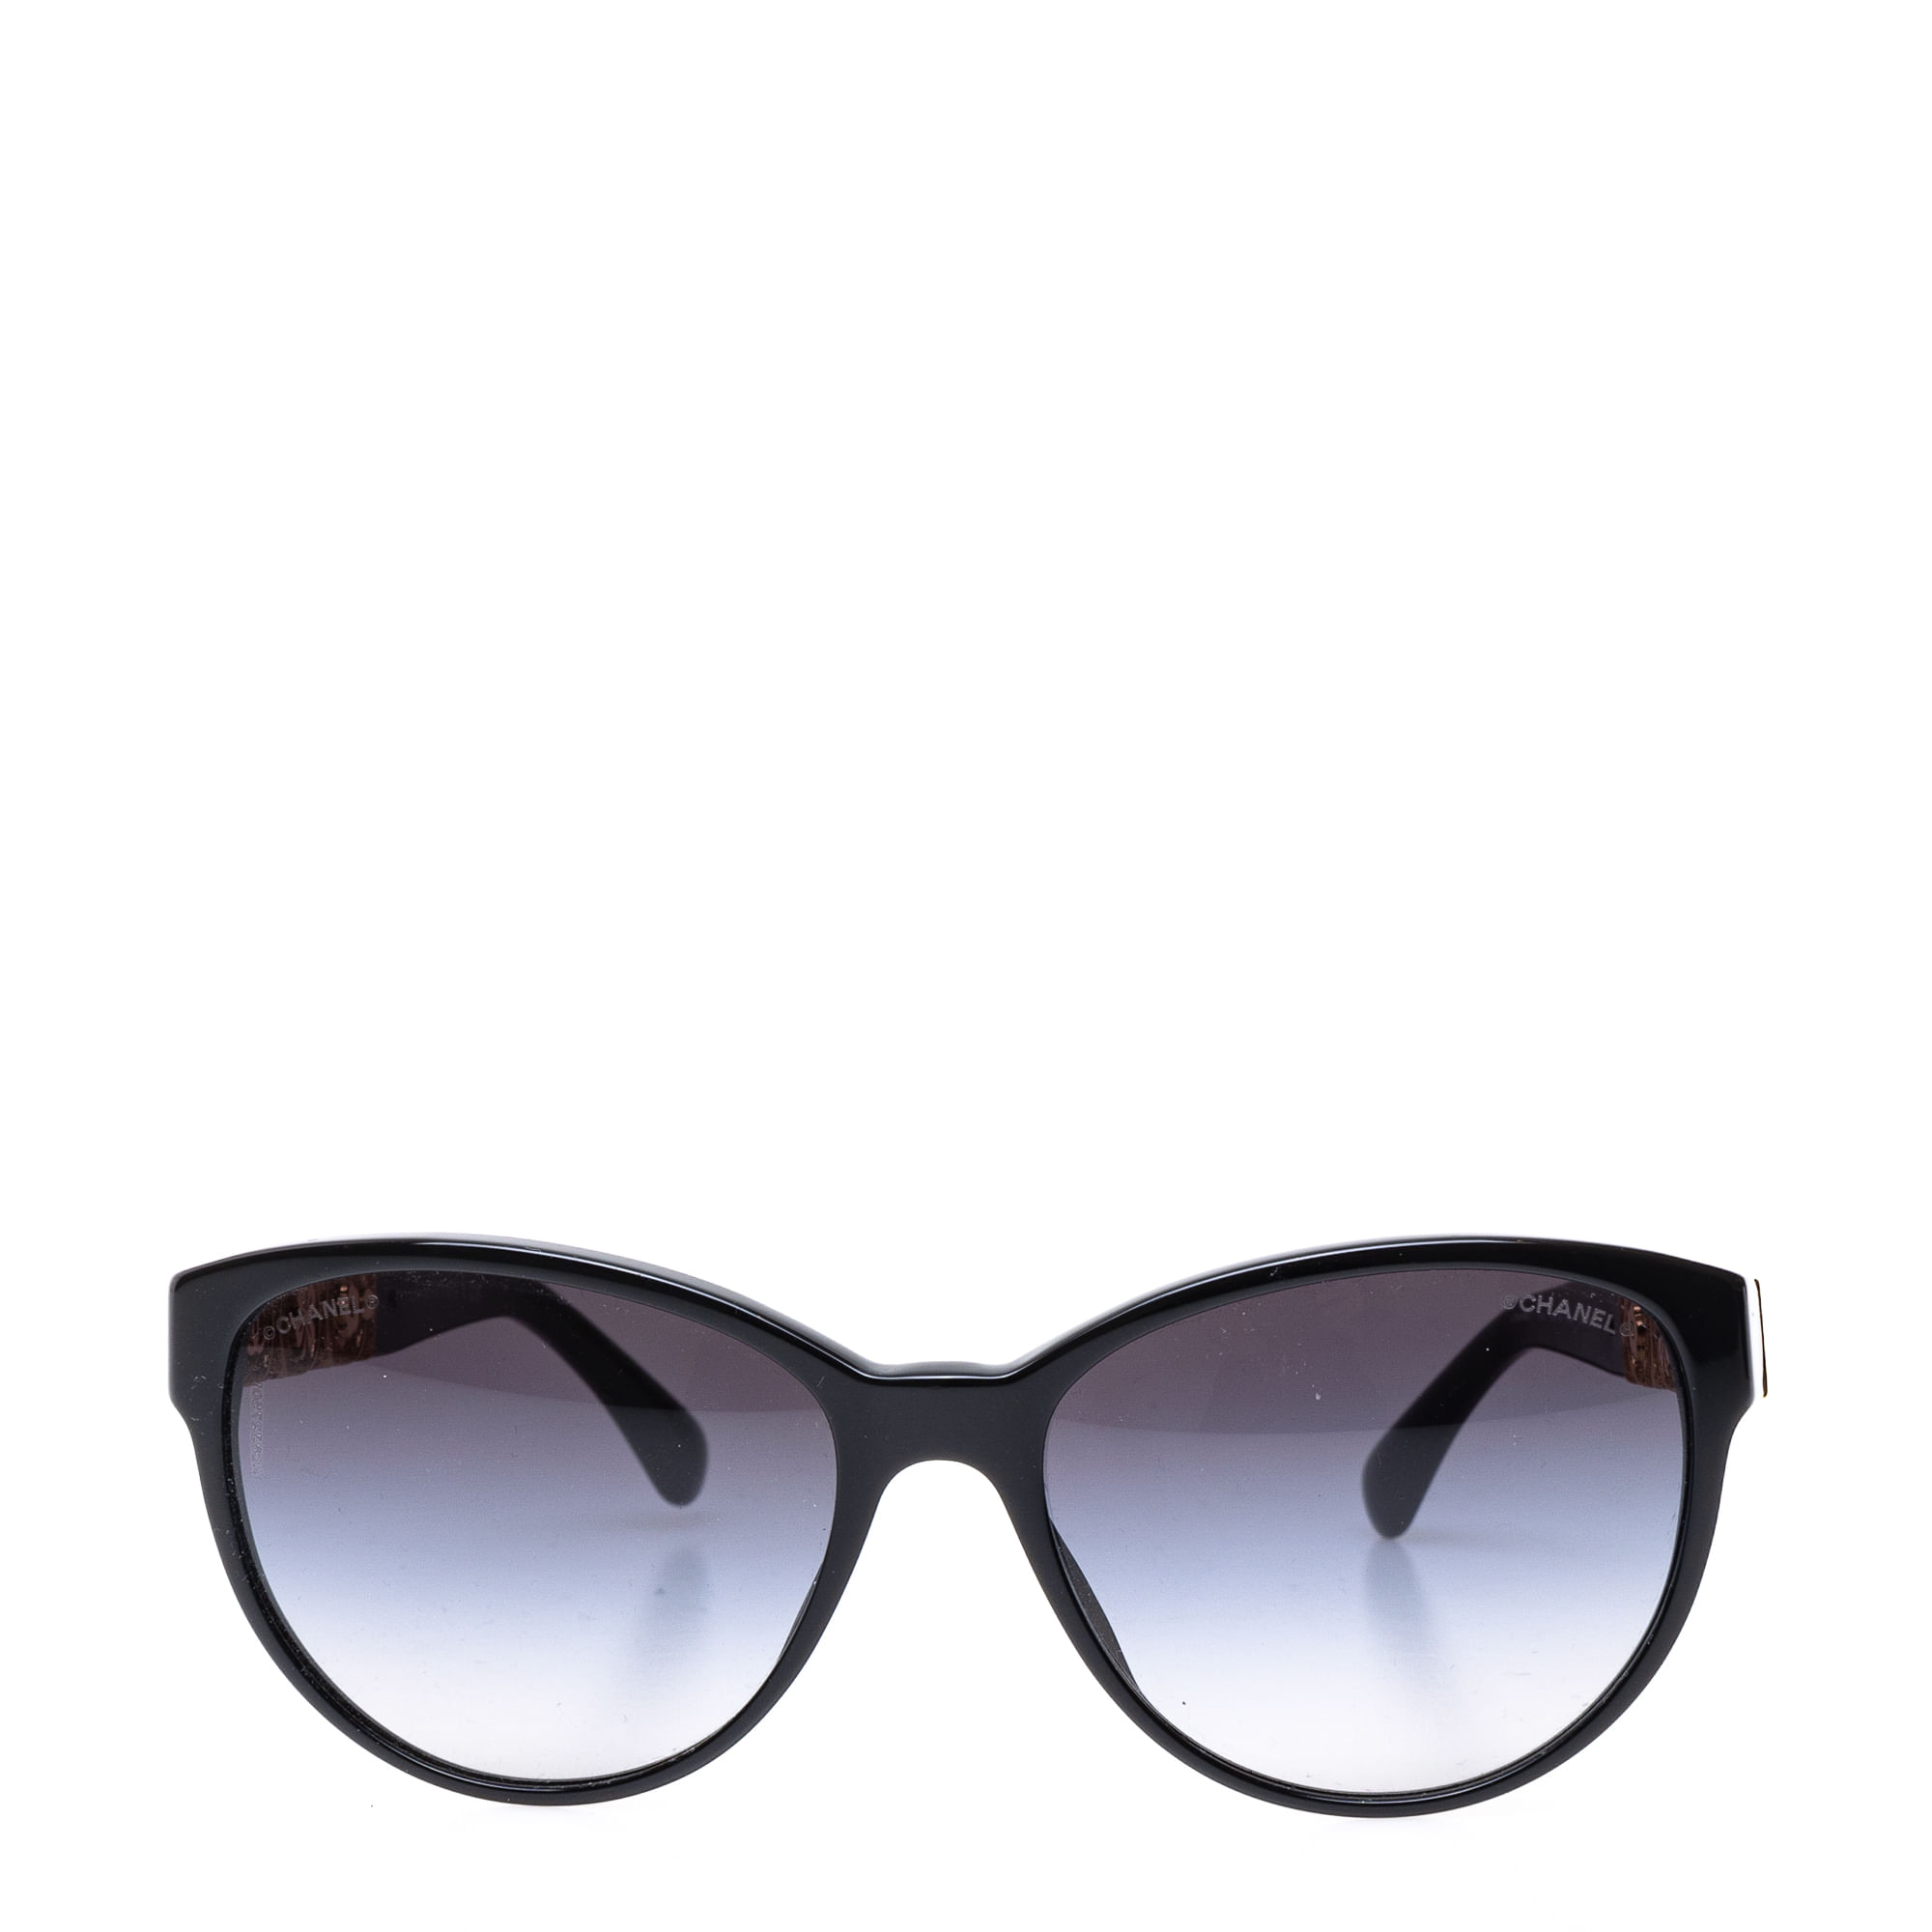 Óculos Chanel 5261 Lateral Dourada | Brechó de luxo - Prettynew